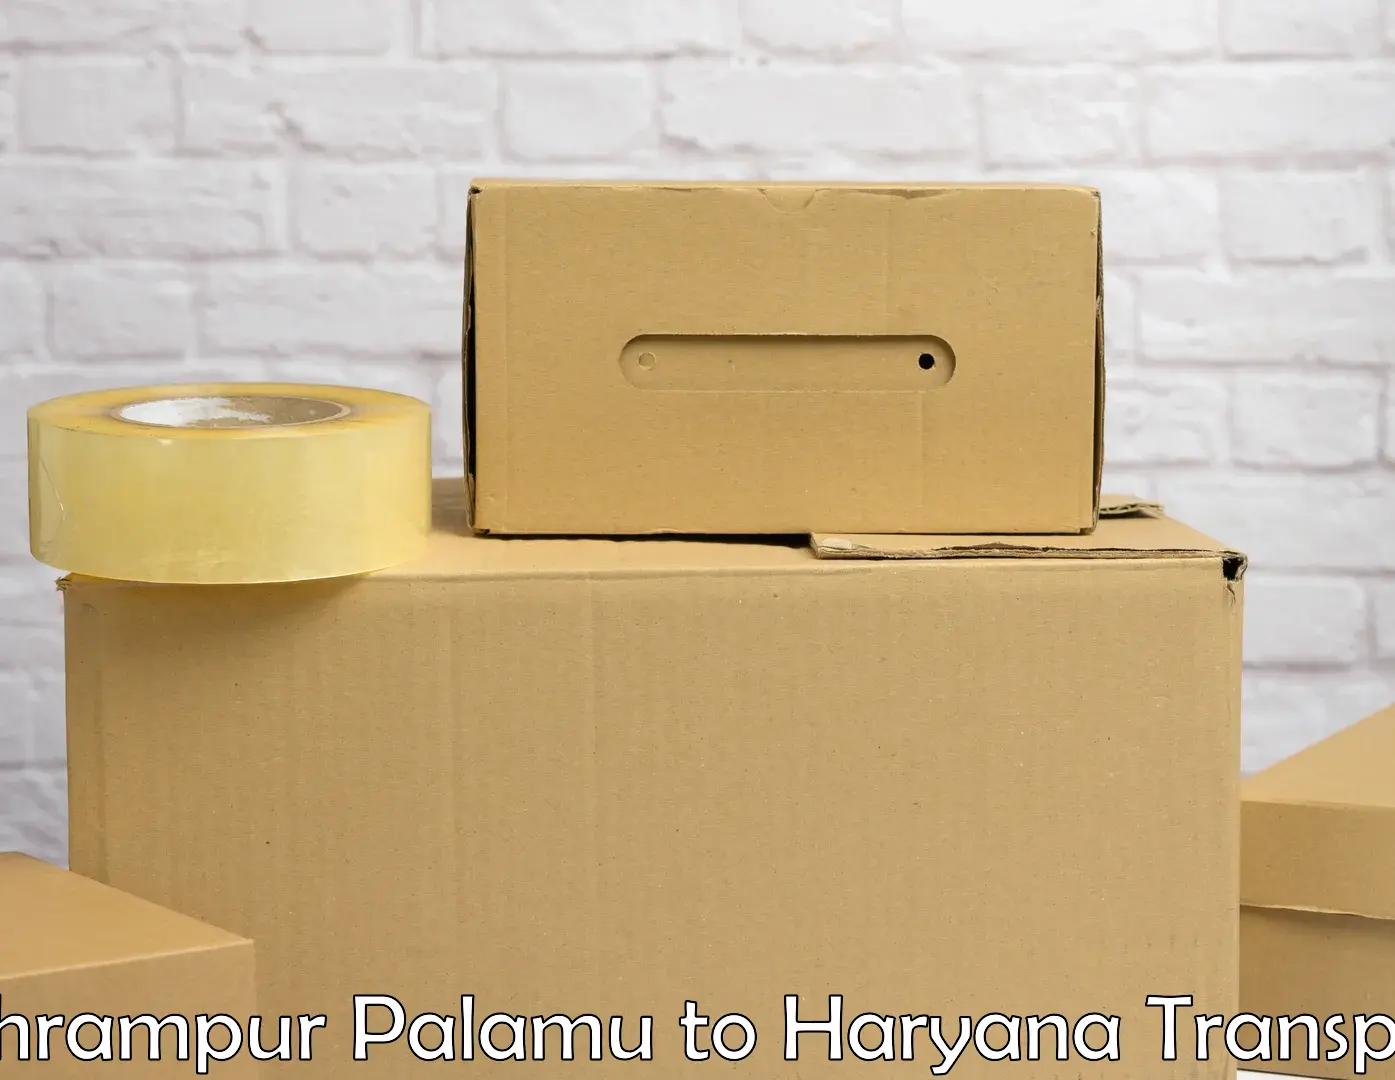 Transport shared services Bishrampur Palamu to Haryana